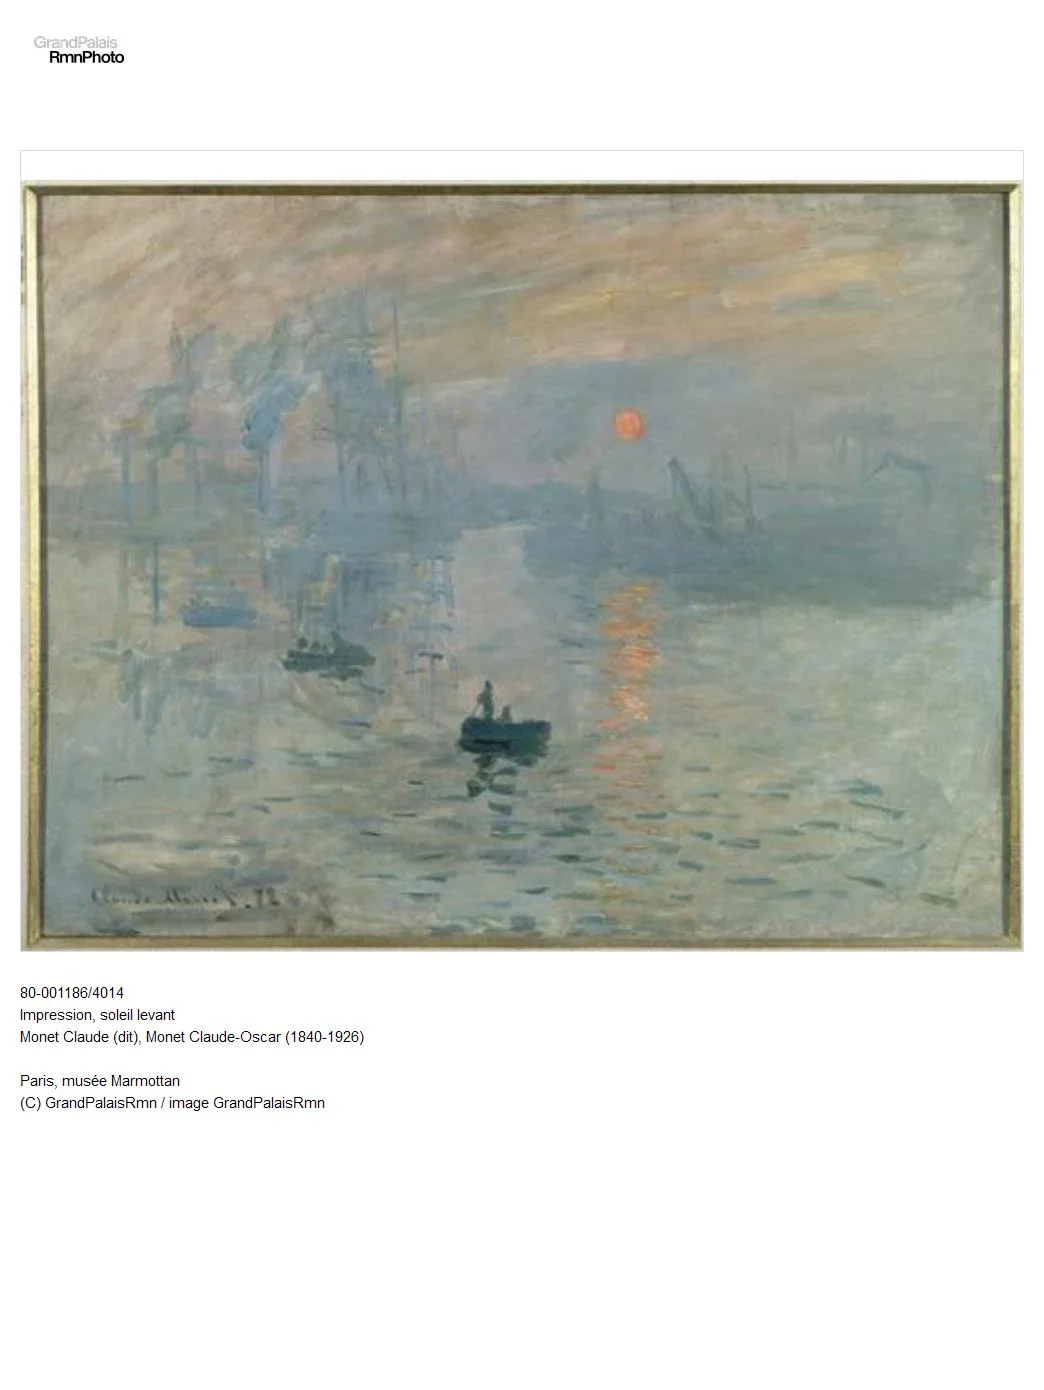 80-001186/4014 Impression, soleil levant Monet Claude (dit), Monet Claude-Oscar (1840-1926) Paris, musée Marmottan (C) GrandPalaisRmn / image GrandPalaisRmn